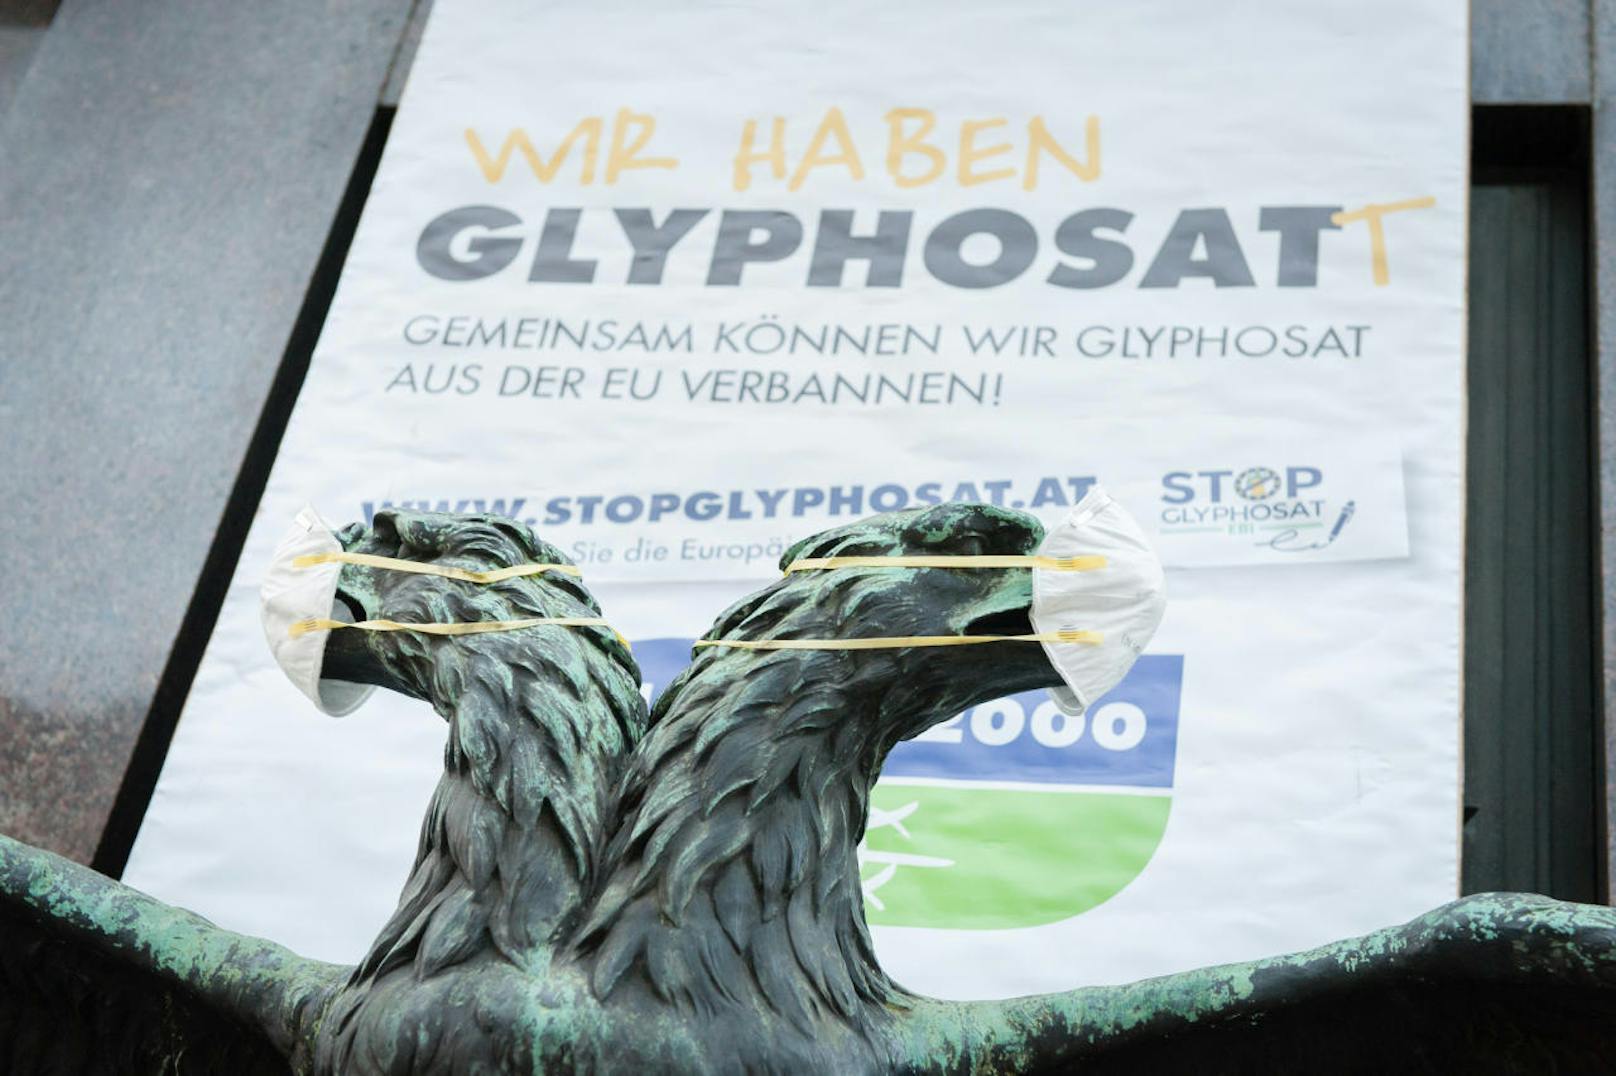 #stopglyphosat Damit Glyphosat nicht für die nächsten 15 Jahre gesichert wird, setzen sich die Aktivisten von GLOBAL 2000 und viele andere Initiativen sich für dessen Verbot ein.